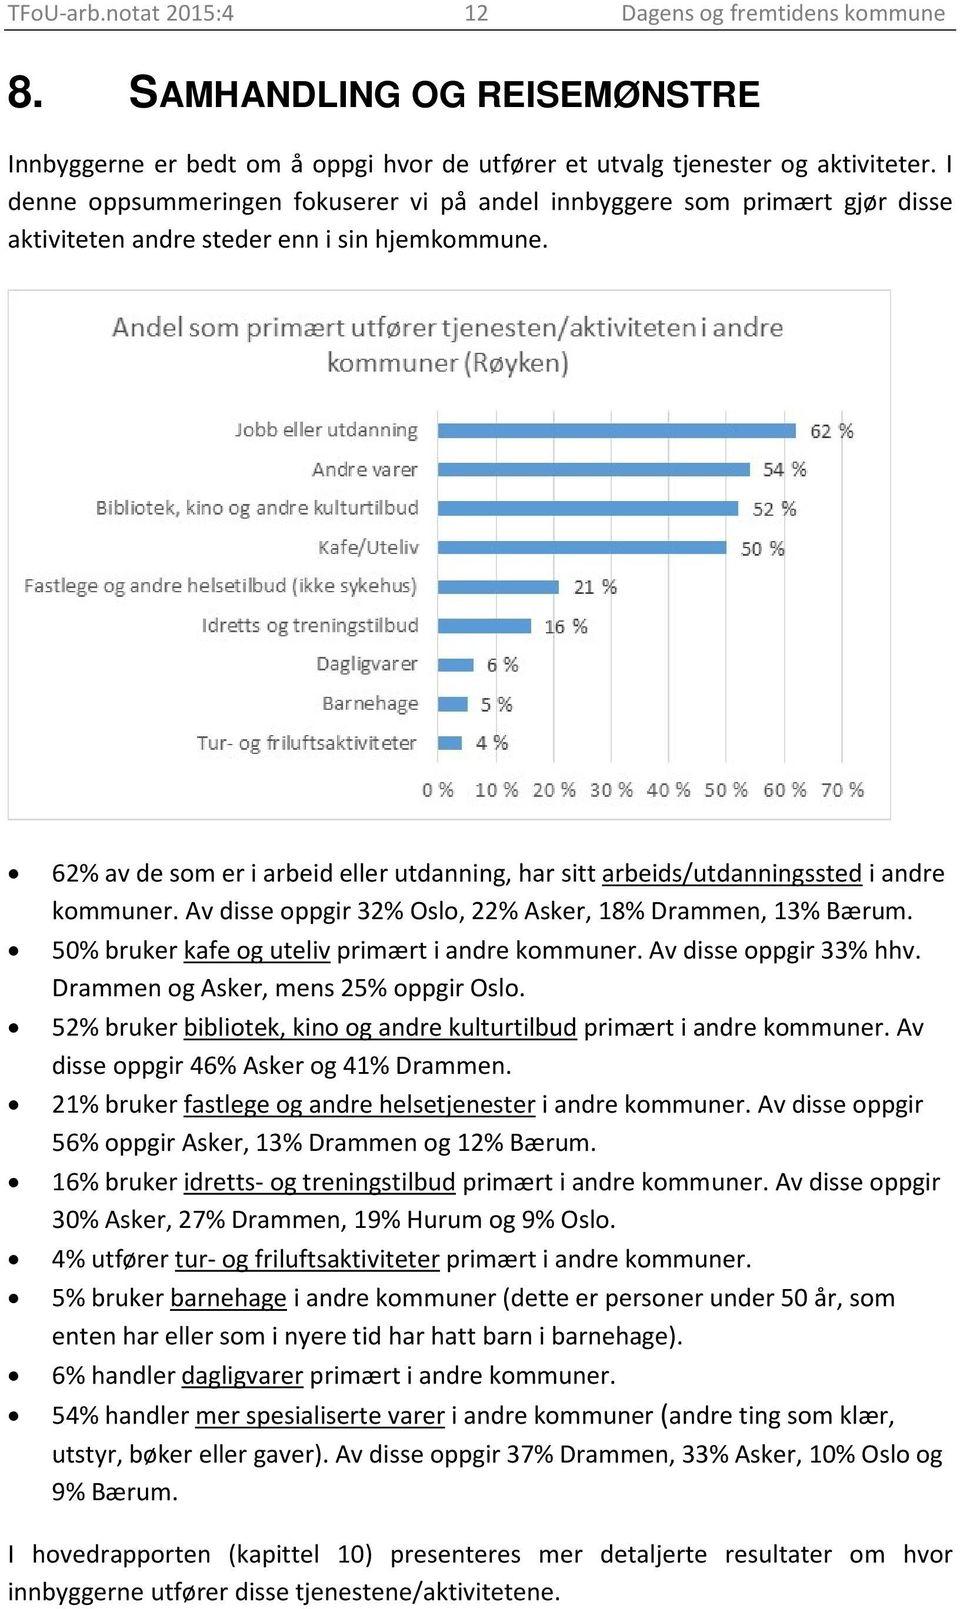 62% av de som er i arbeid eller utdanning, har sitt arbeids/utdanningssted i andre kommuner. Av disse oppgir 32% Oslo, 22% Asker, 18% Drammen, 13% Bærum.